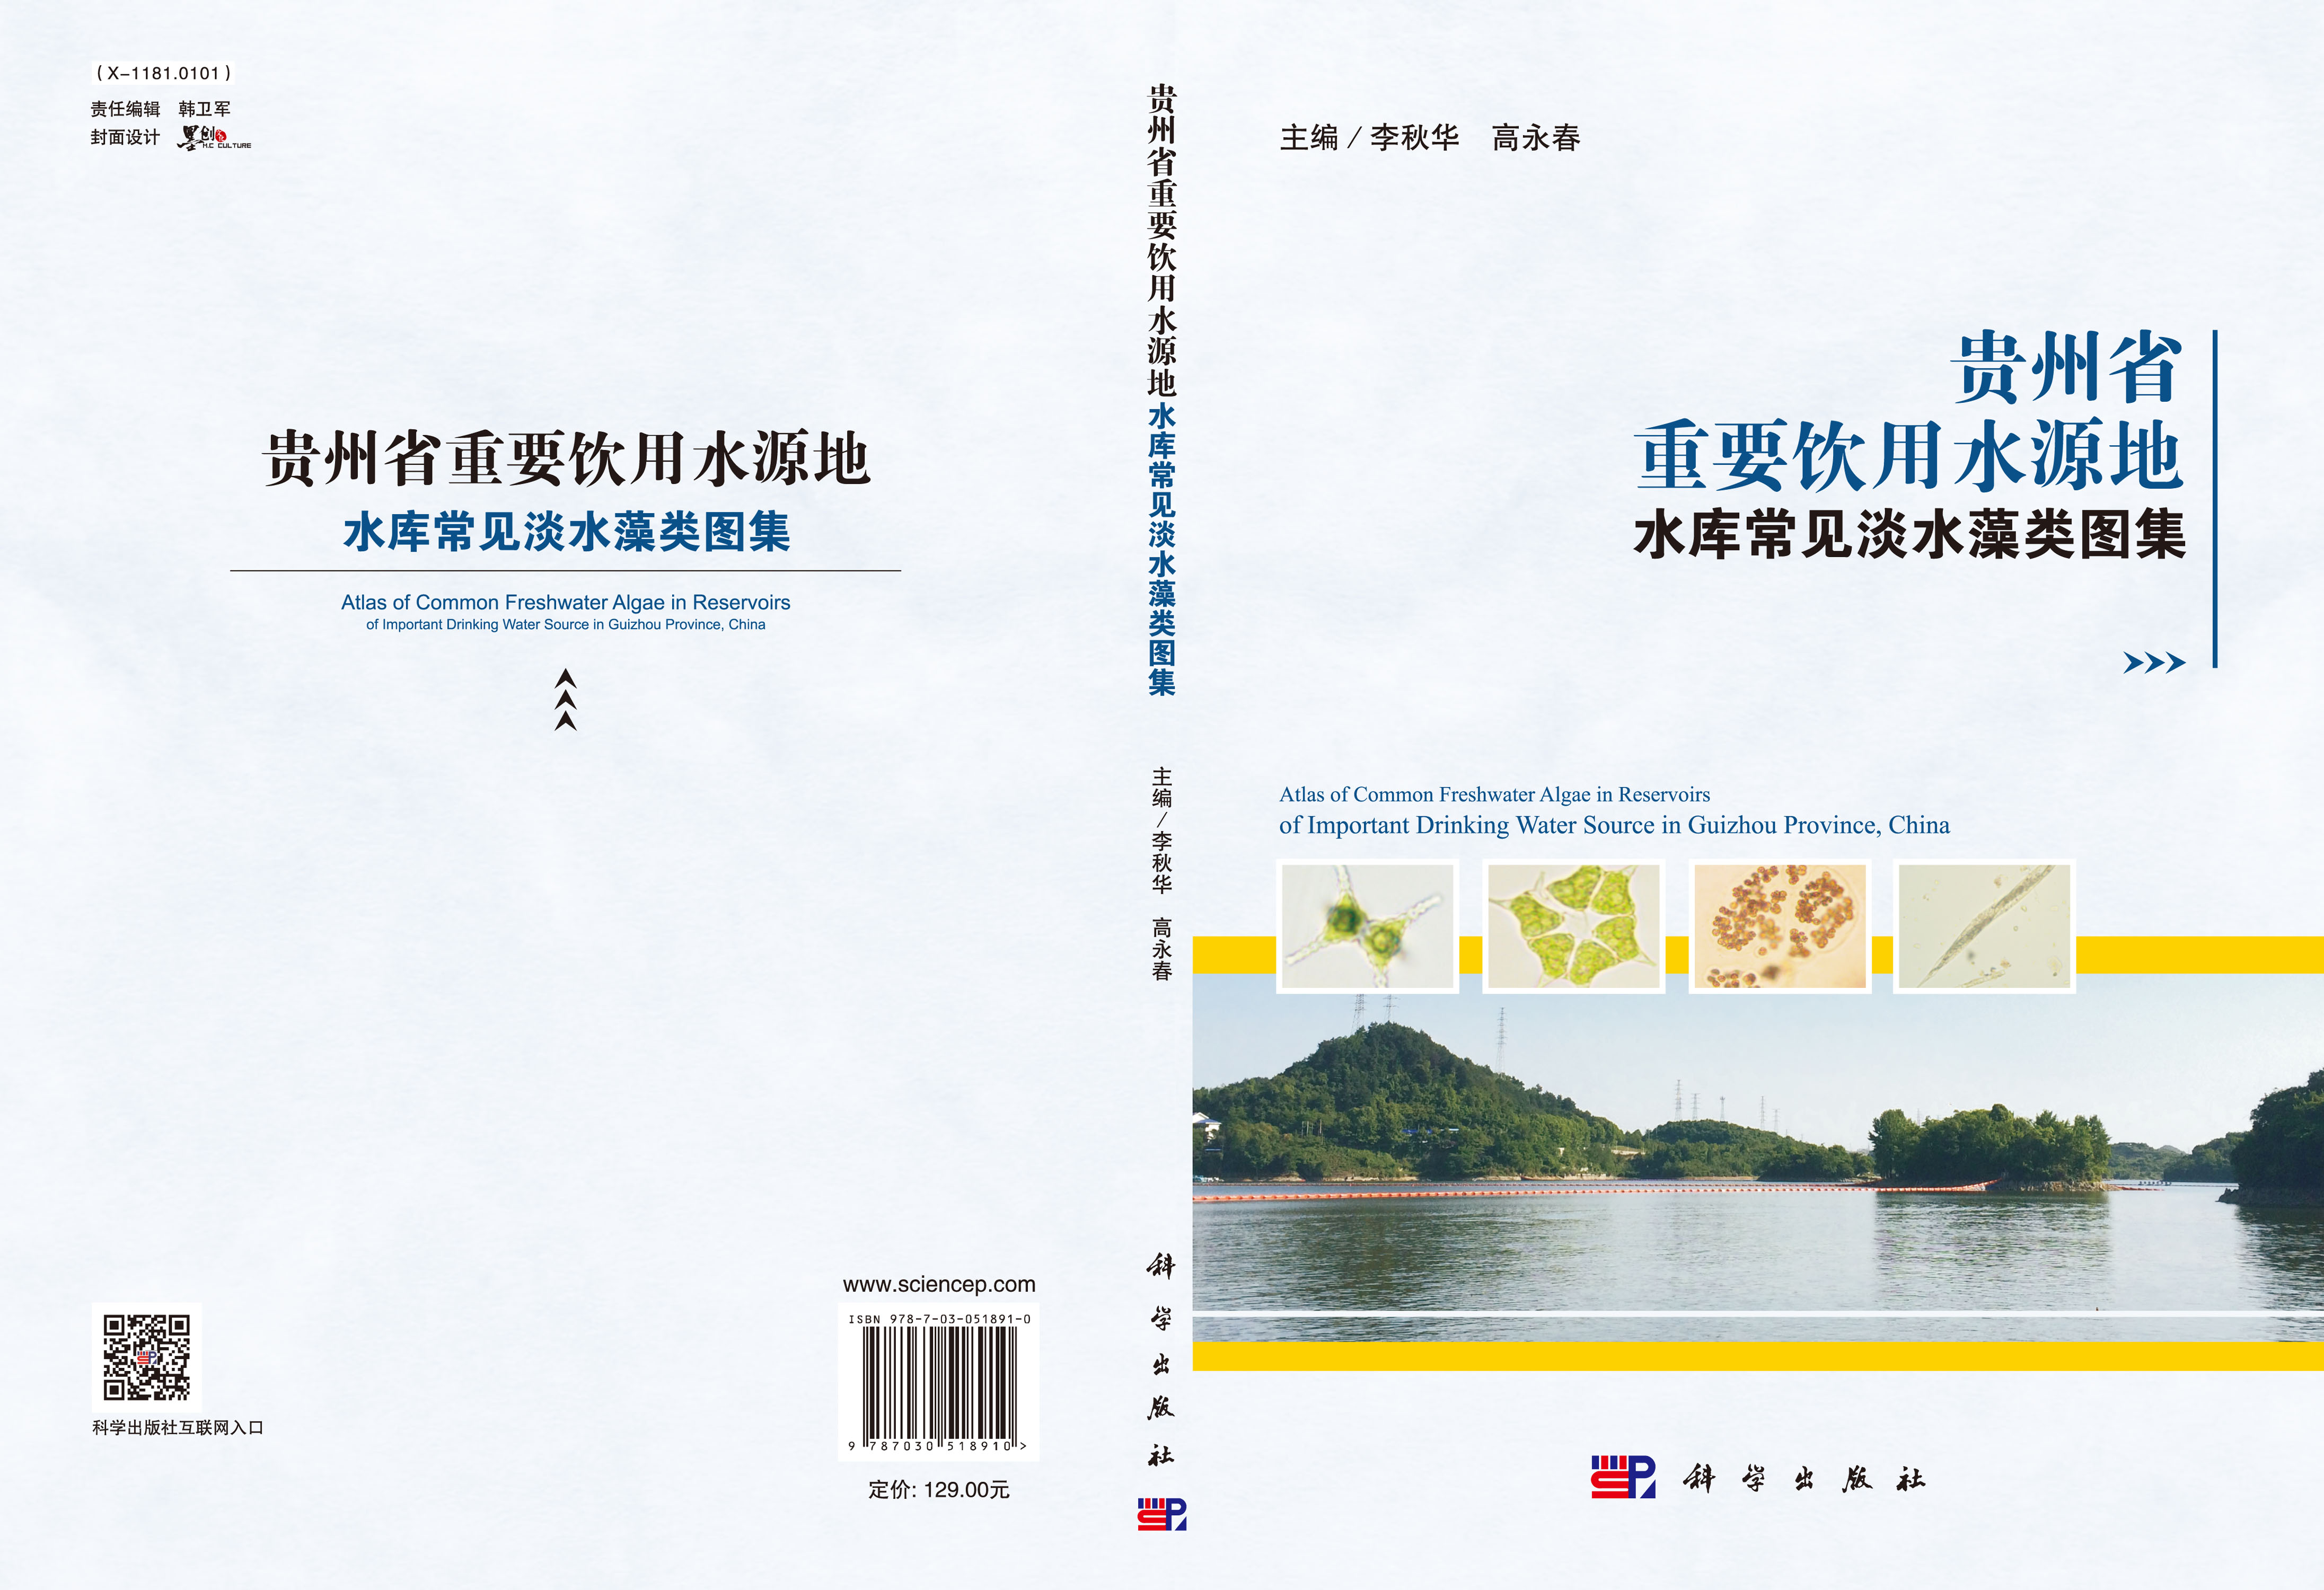 贵州省重要饮用水源地水库常见淡水藻类图集